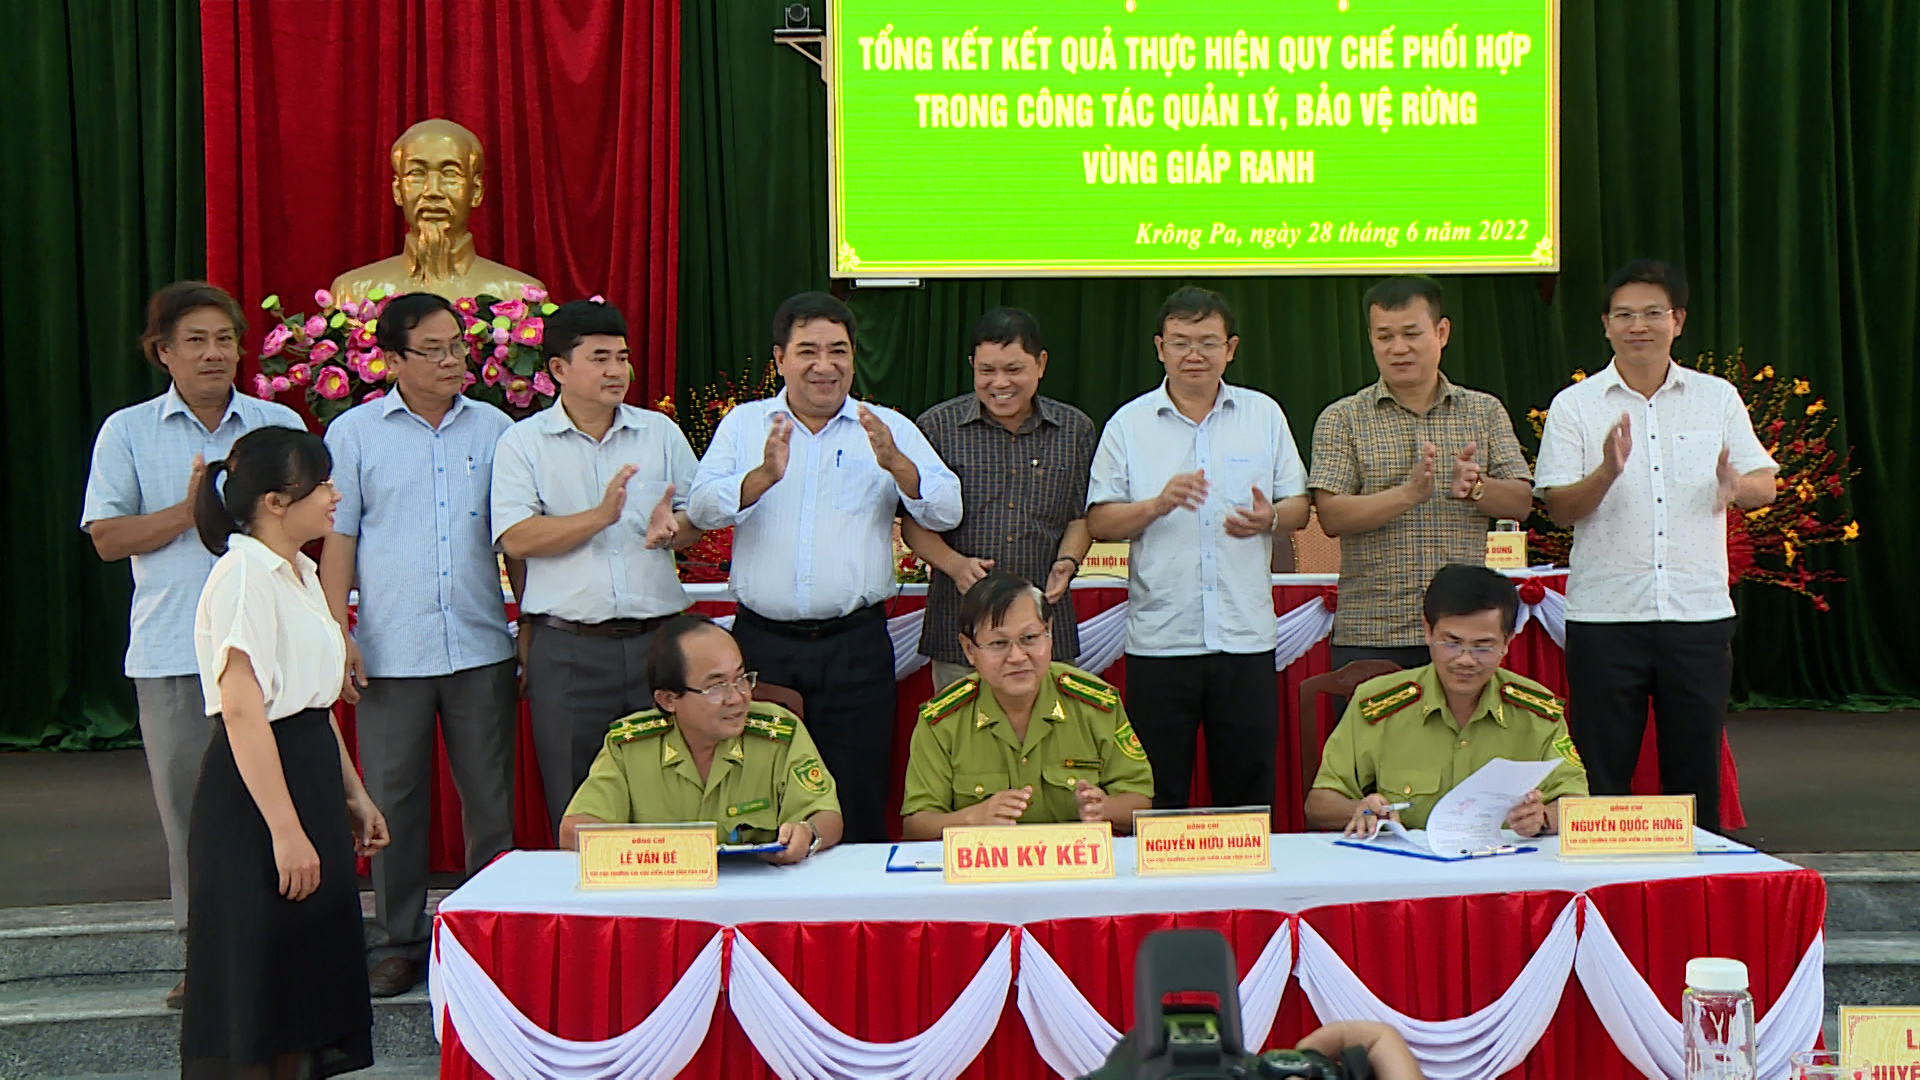 Tổng kết thực hiện Quy chế phối hợp trong công tác quản lý, bảo vệ rừng vùng giáp ranh giữa 03 tỉnh Gia Lai, Đăk Lăk và Phú Yên